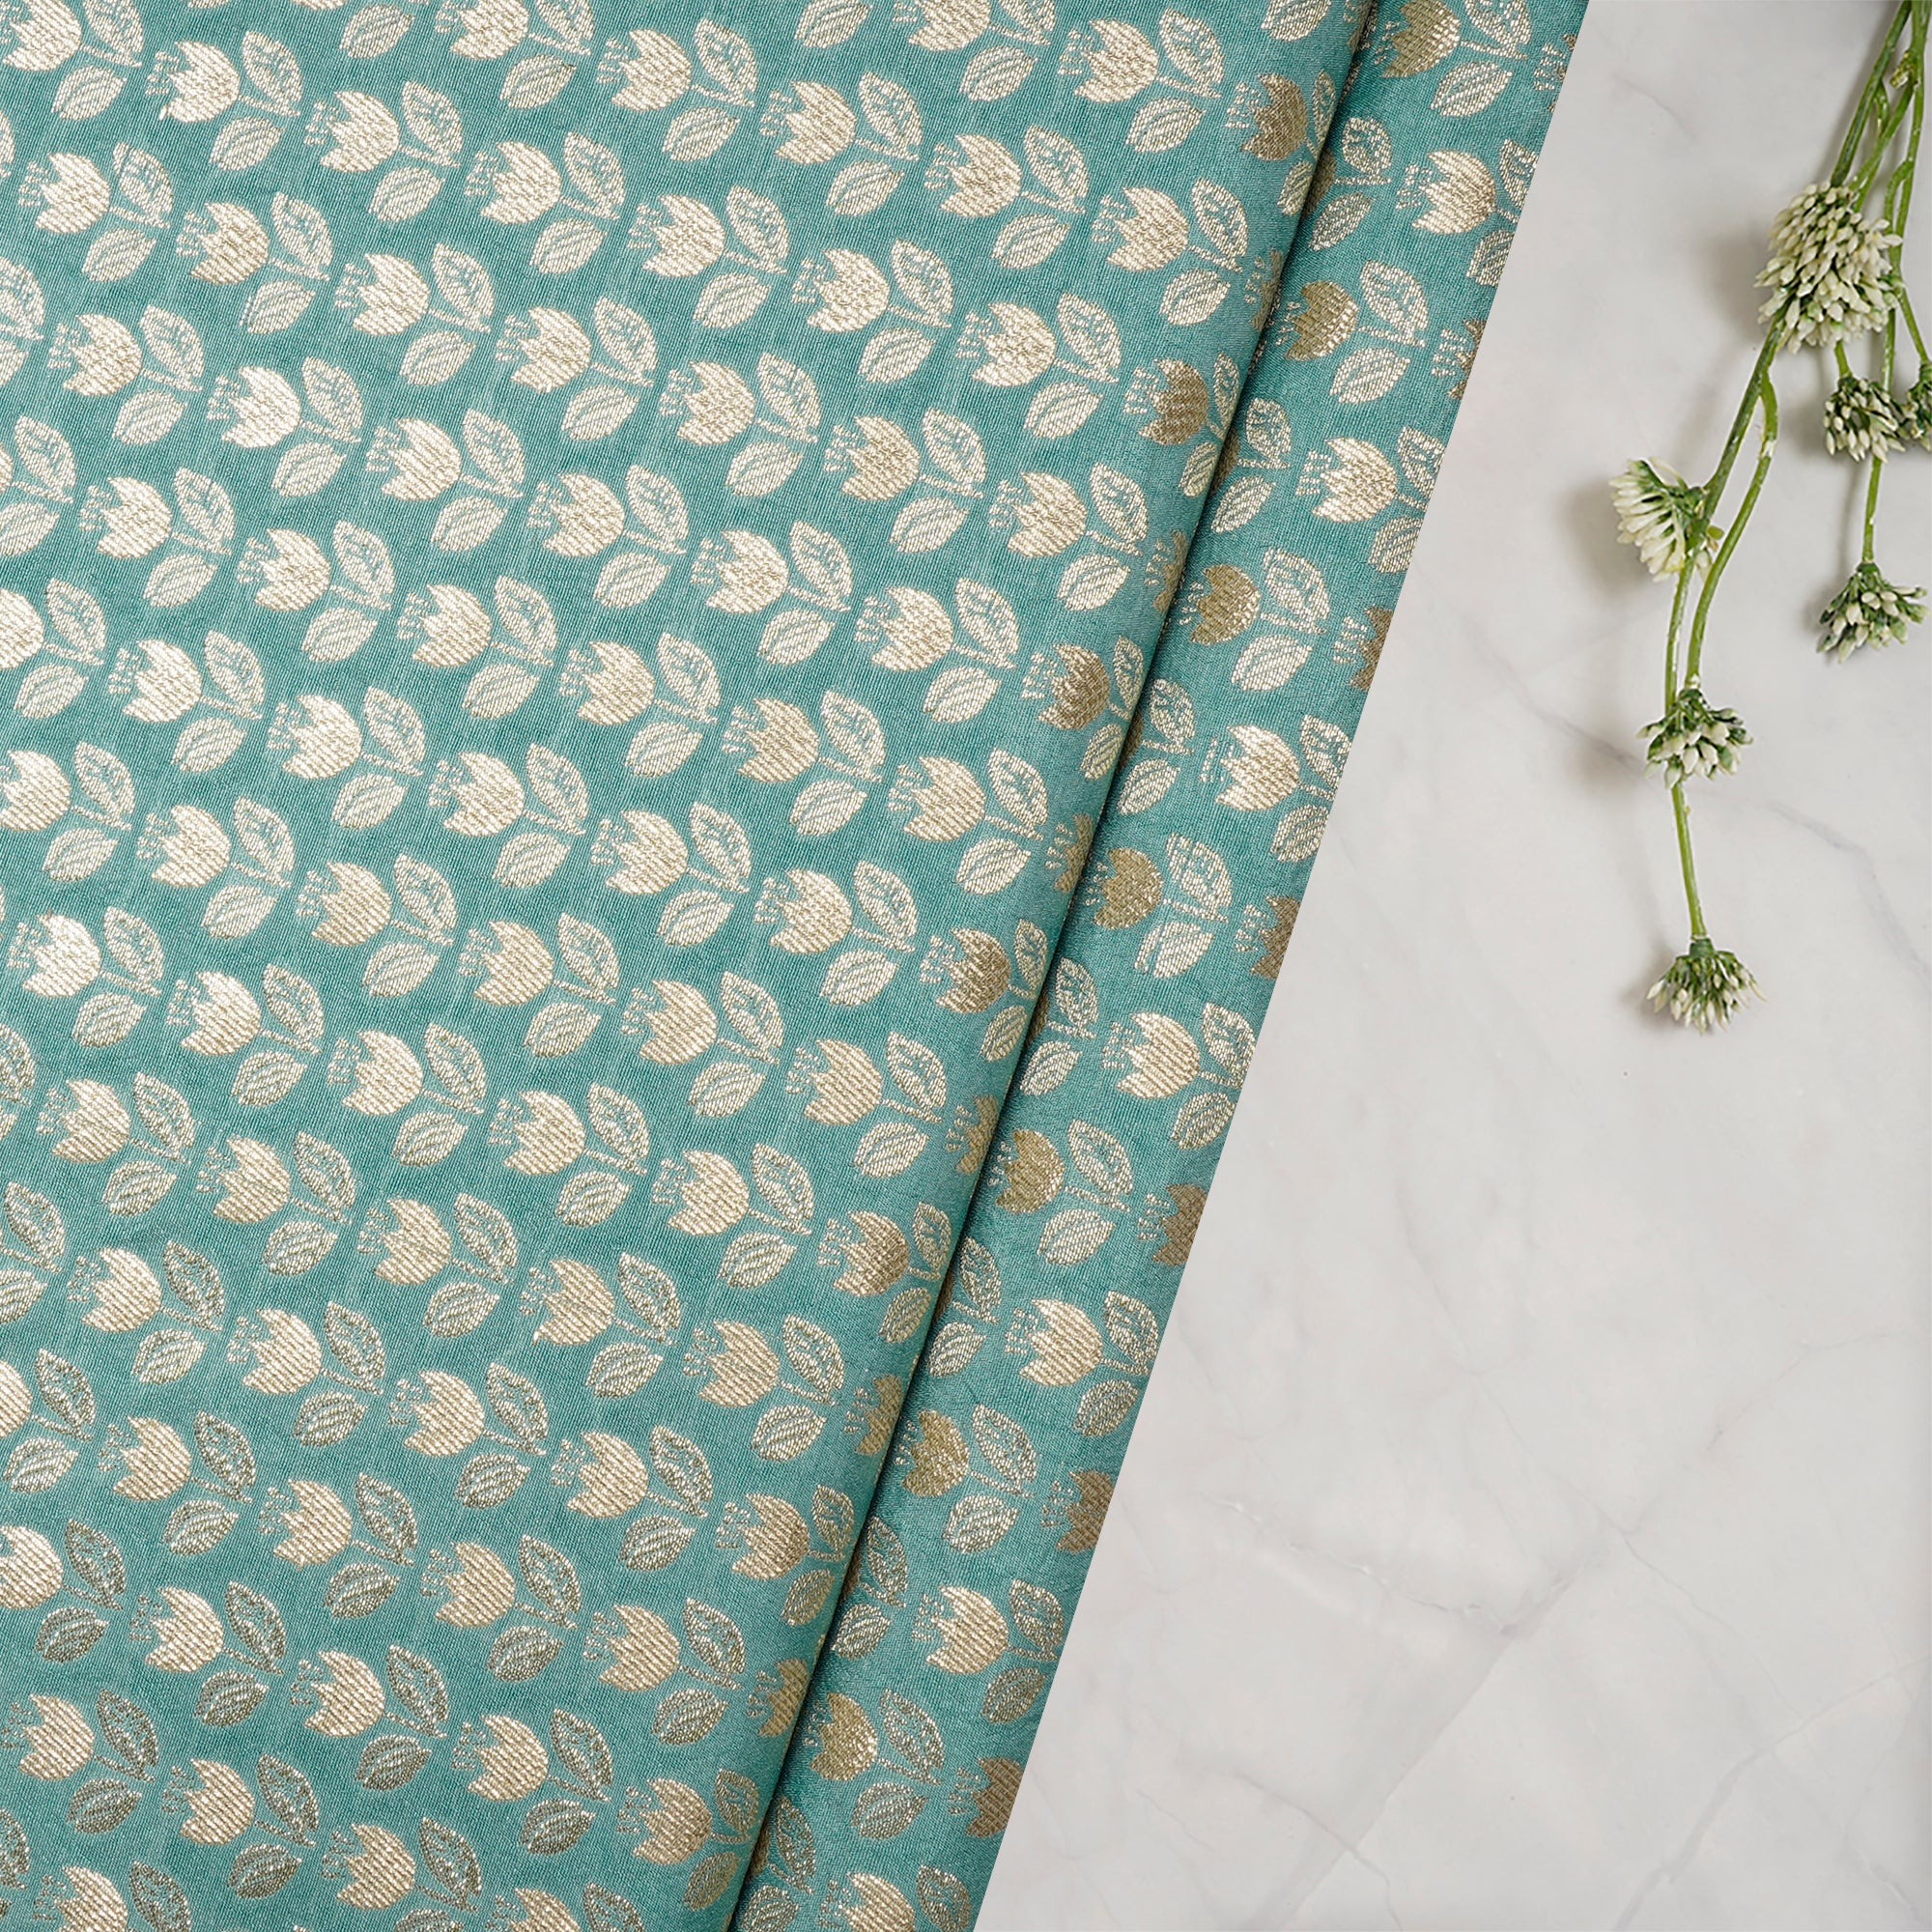 Wasabi Floral Booti Pattern Blended Banarasi Brocade Fabric